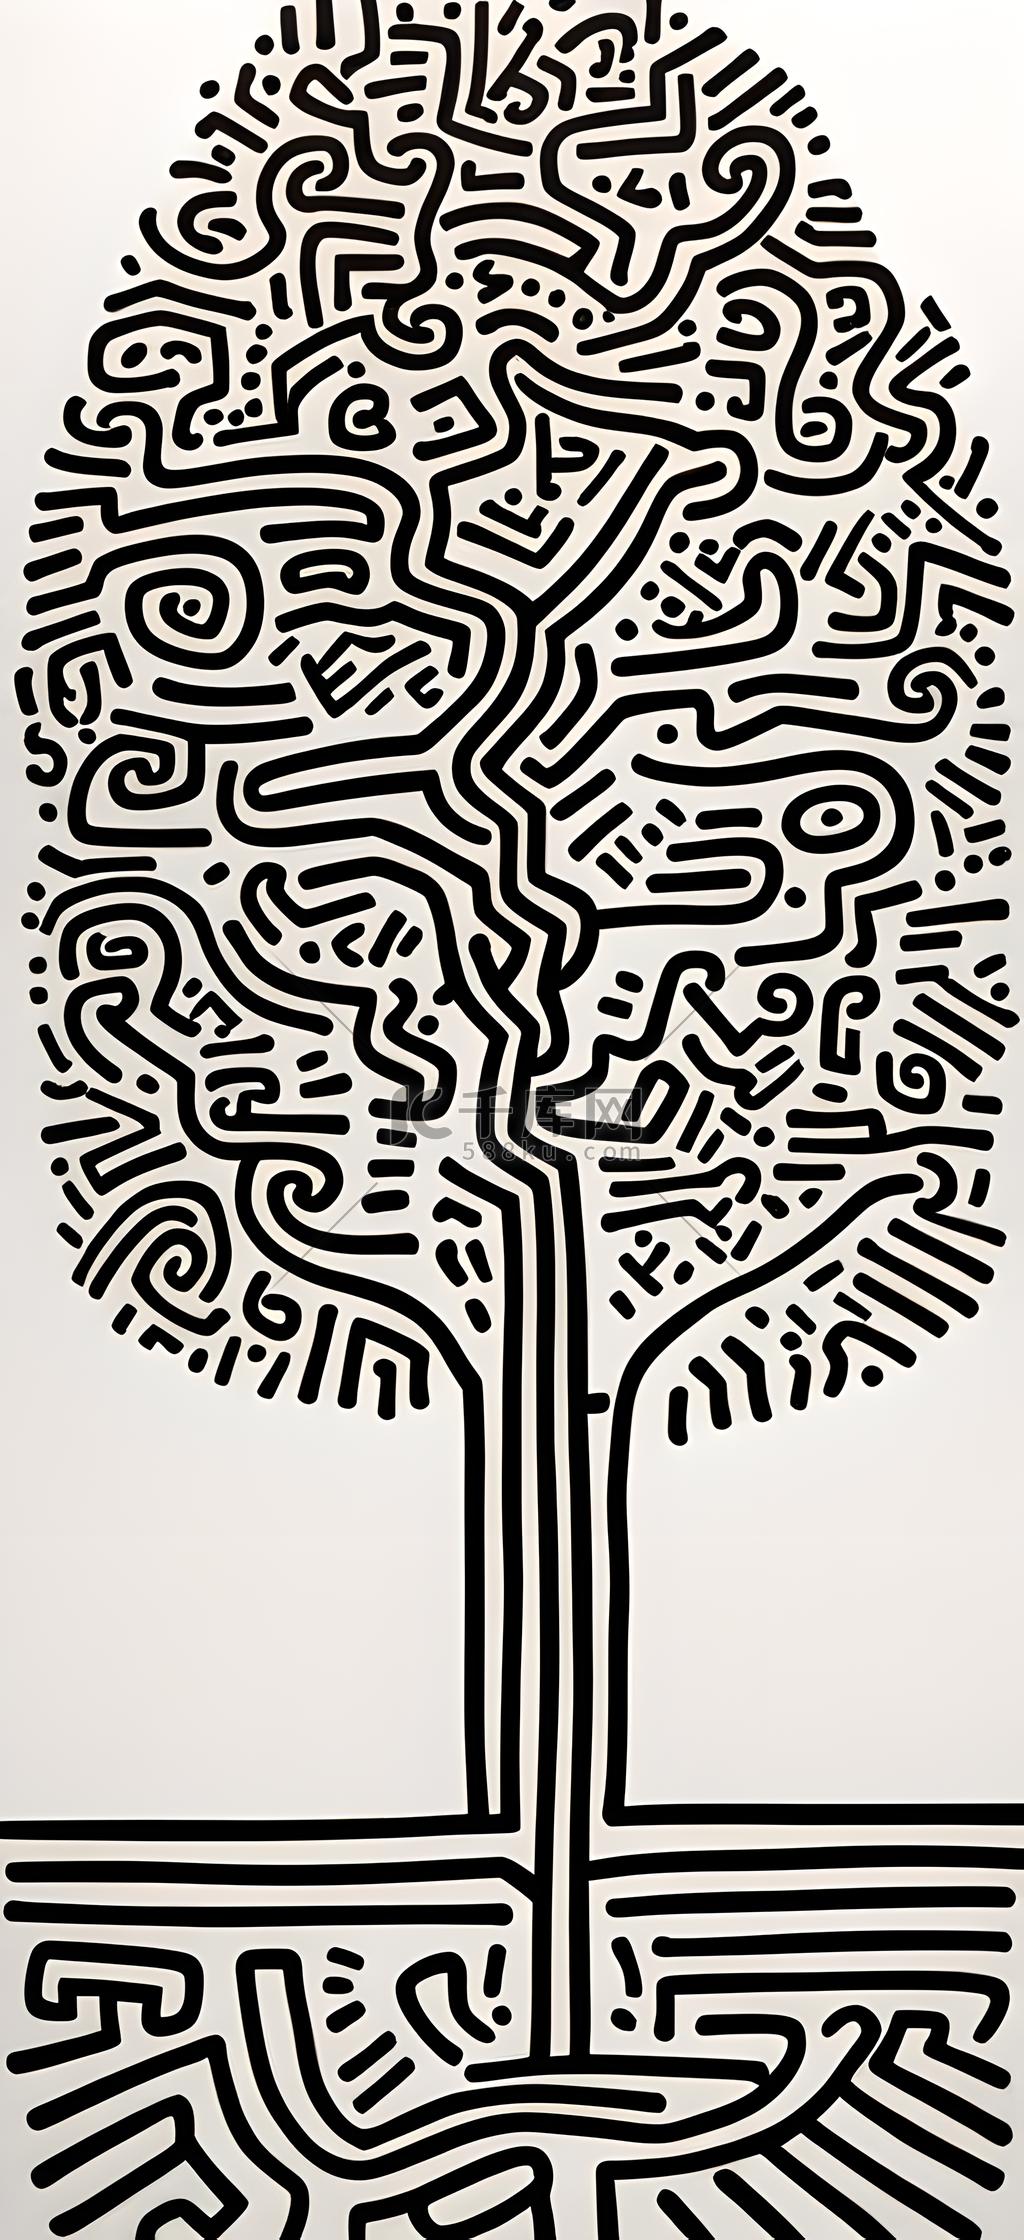 波普艺术树木插画平面设计图片